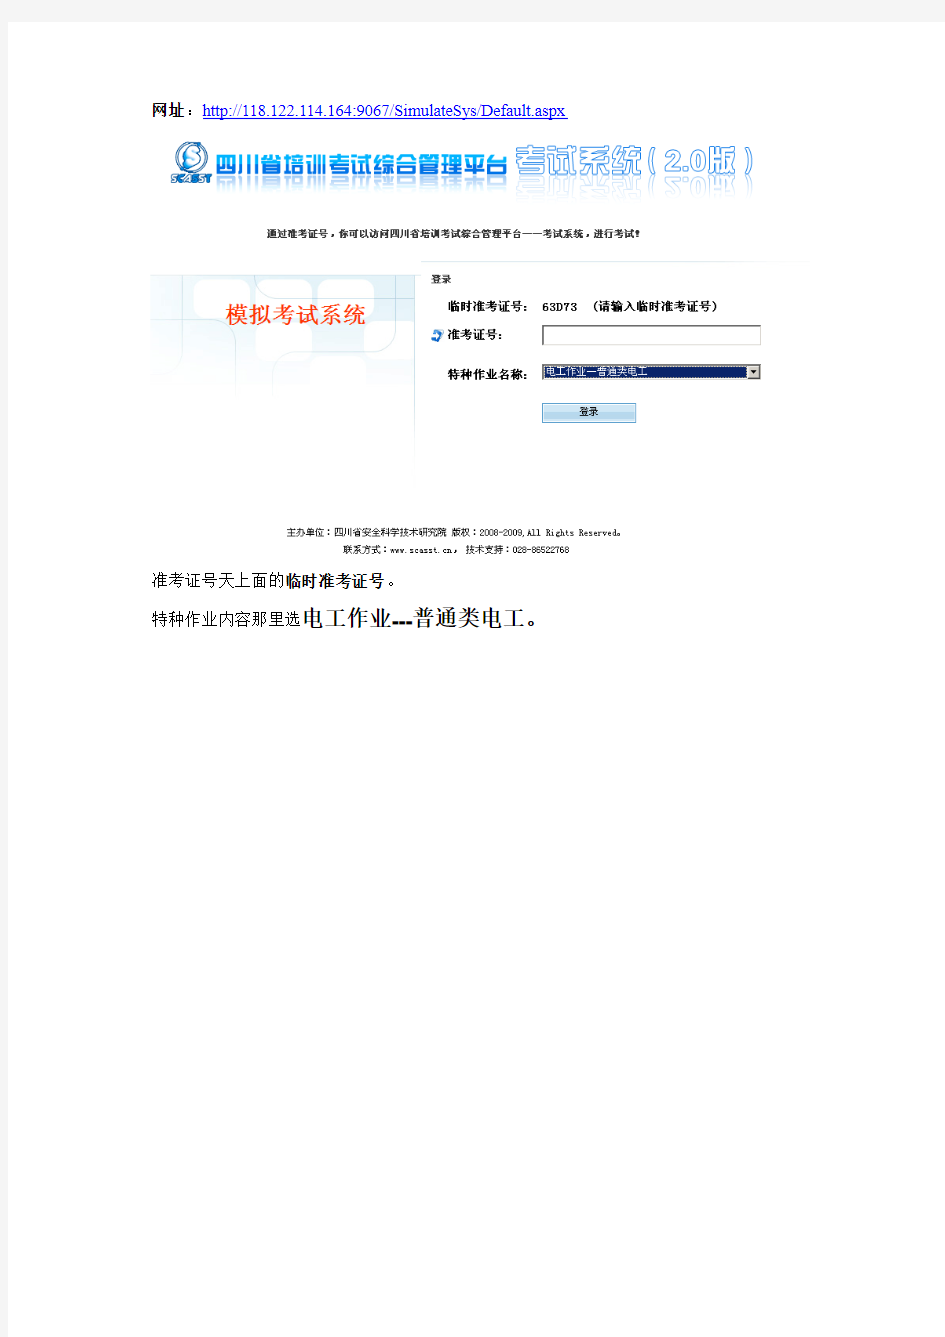 四川省培训考试综合管理平台考试系统